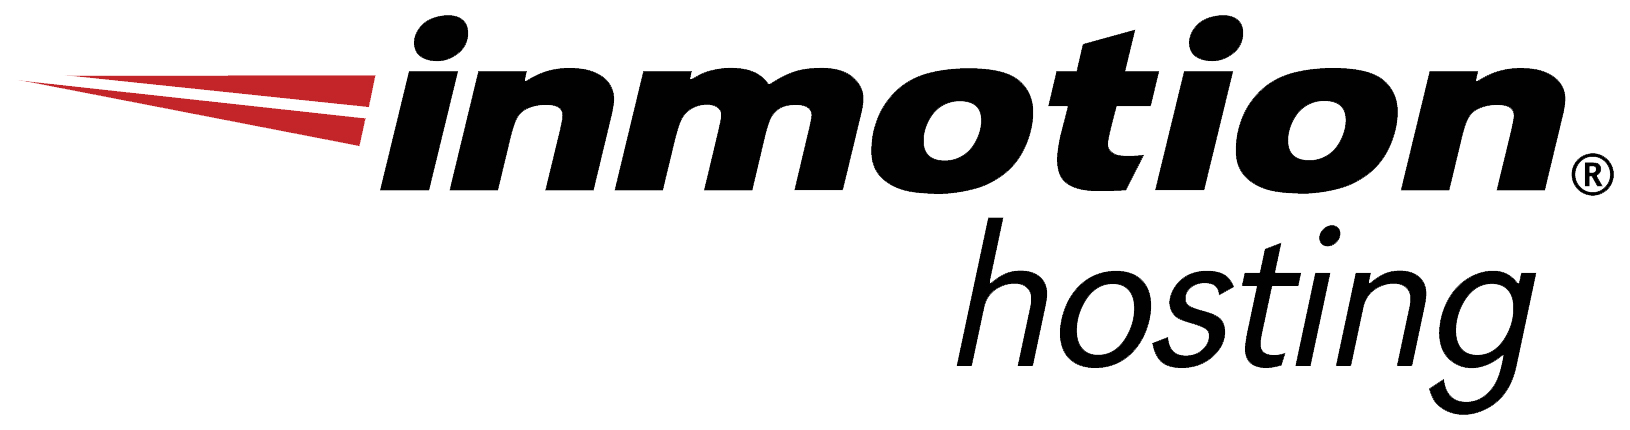 www.mintnotion.com Logo